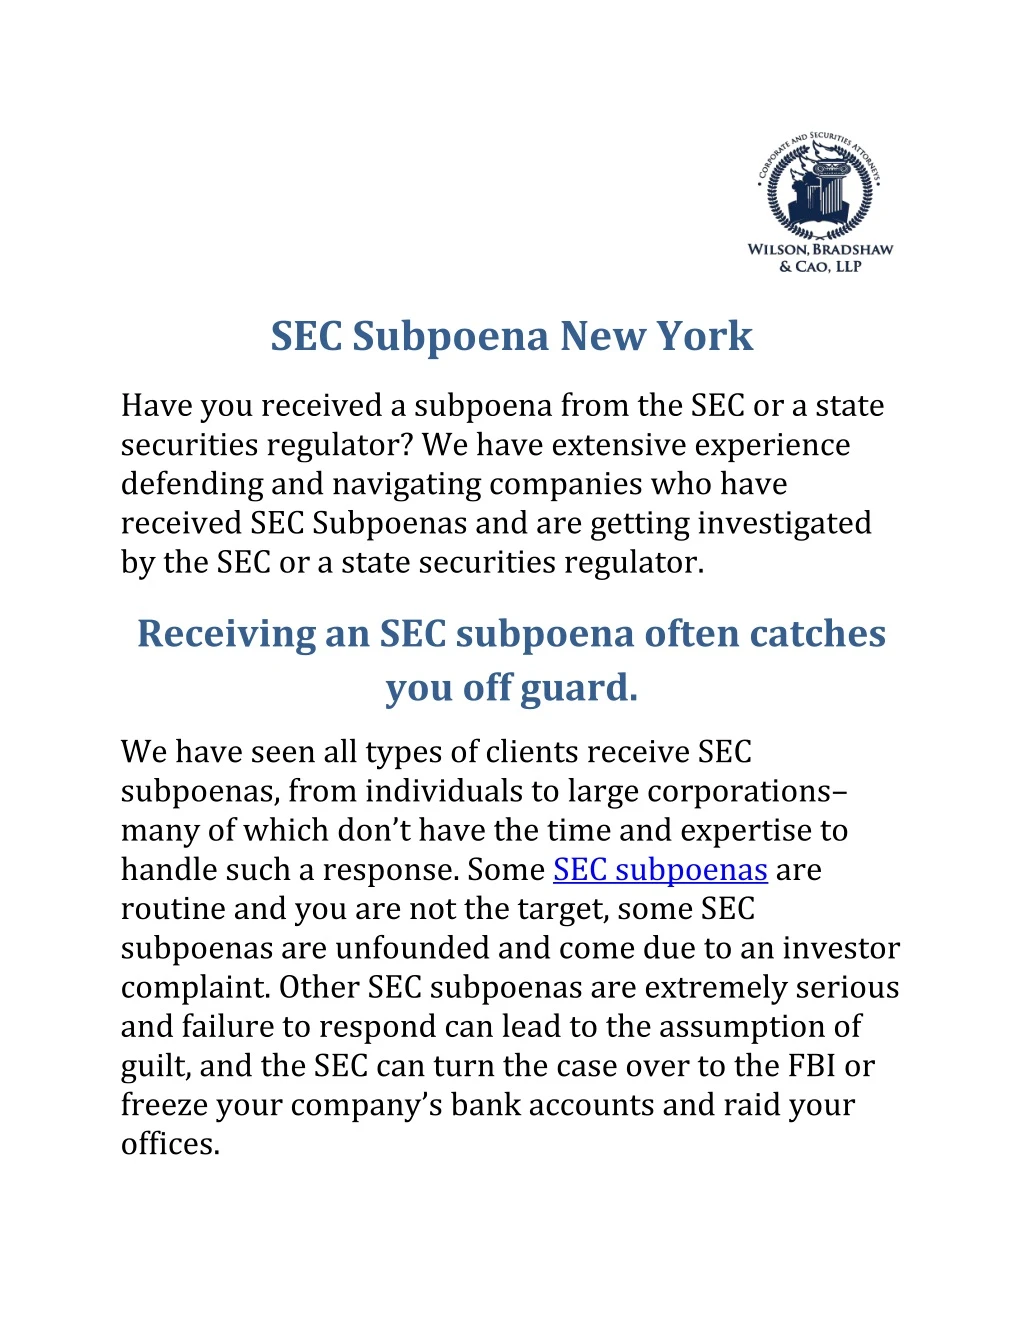 sec subpoena new york